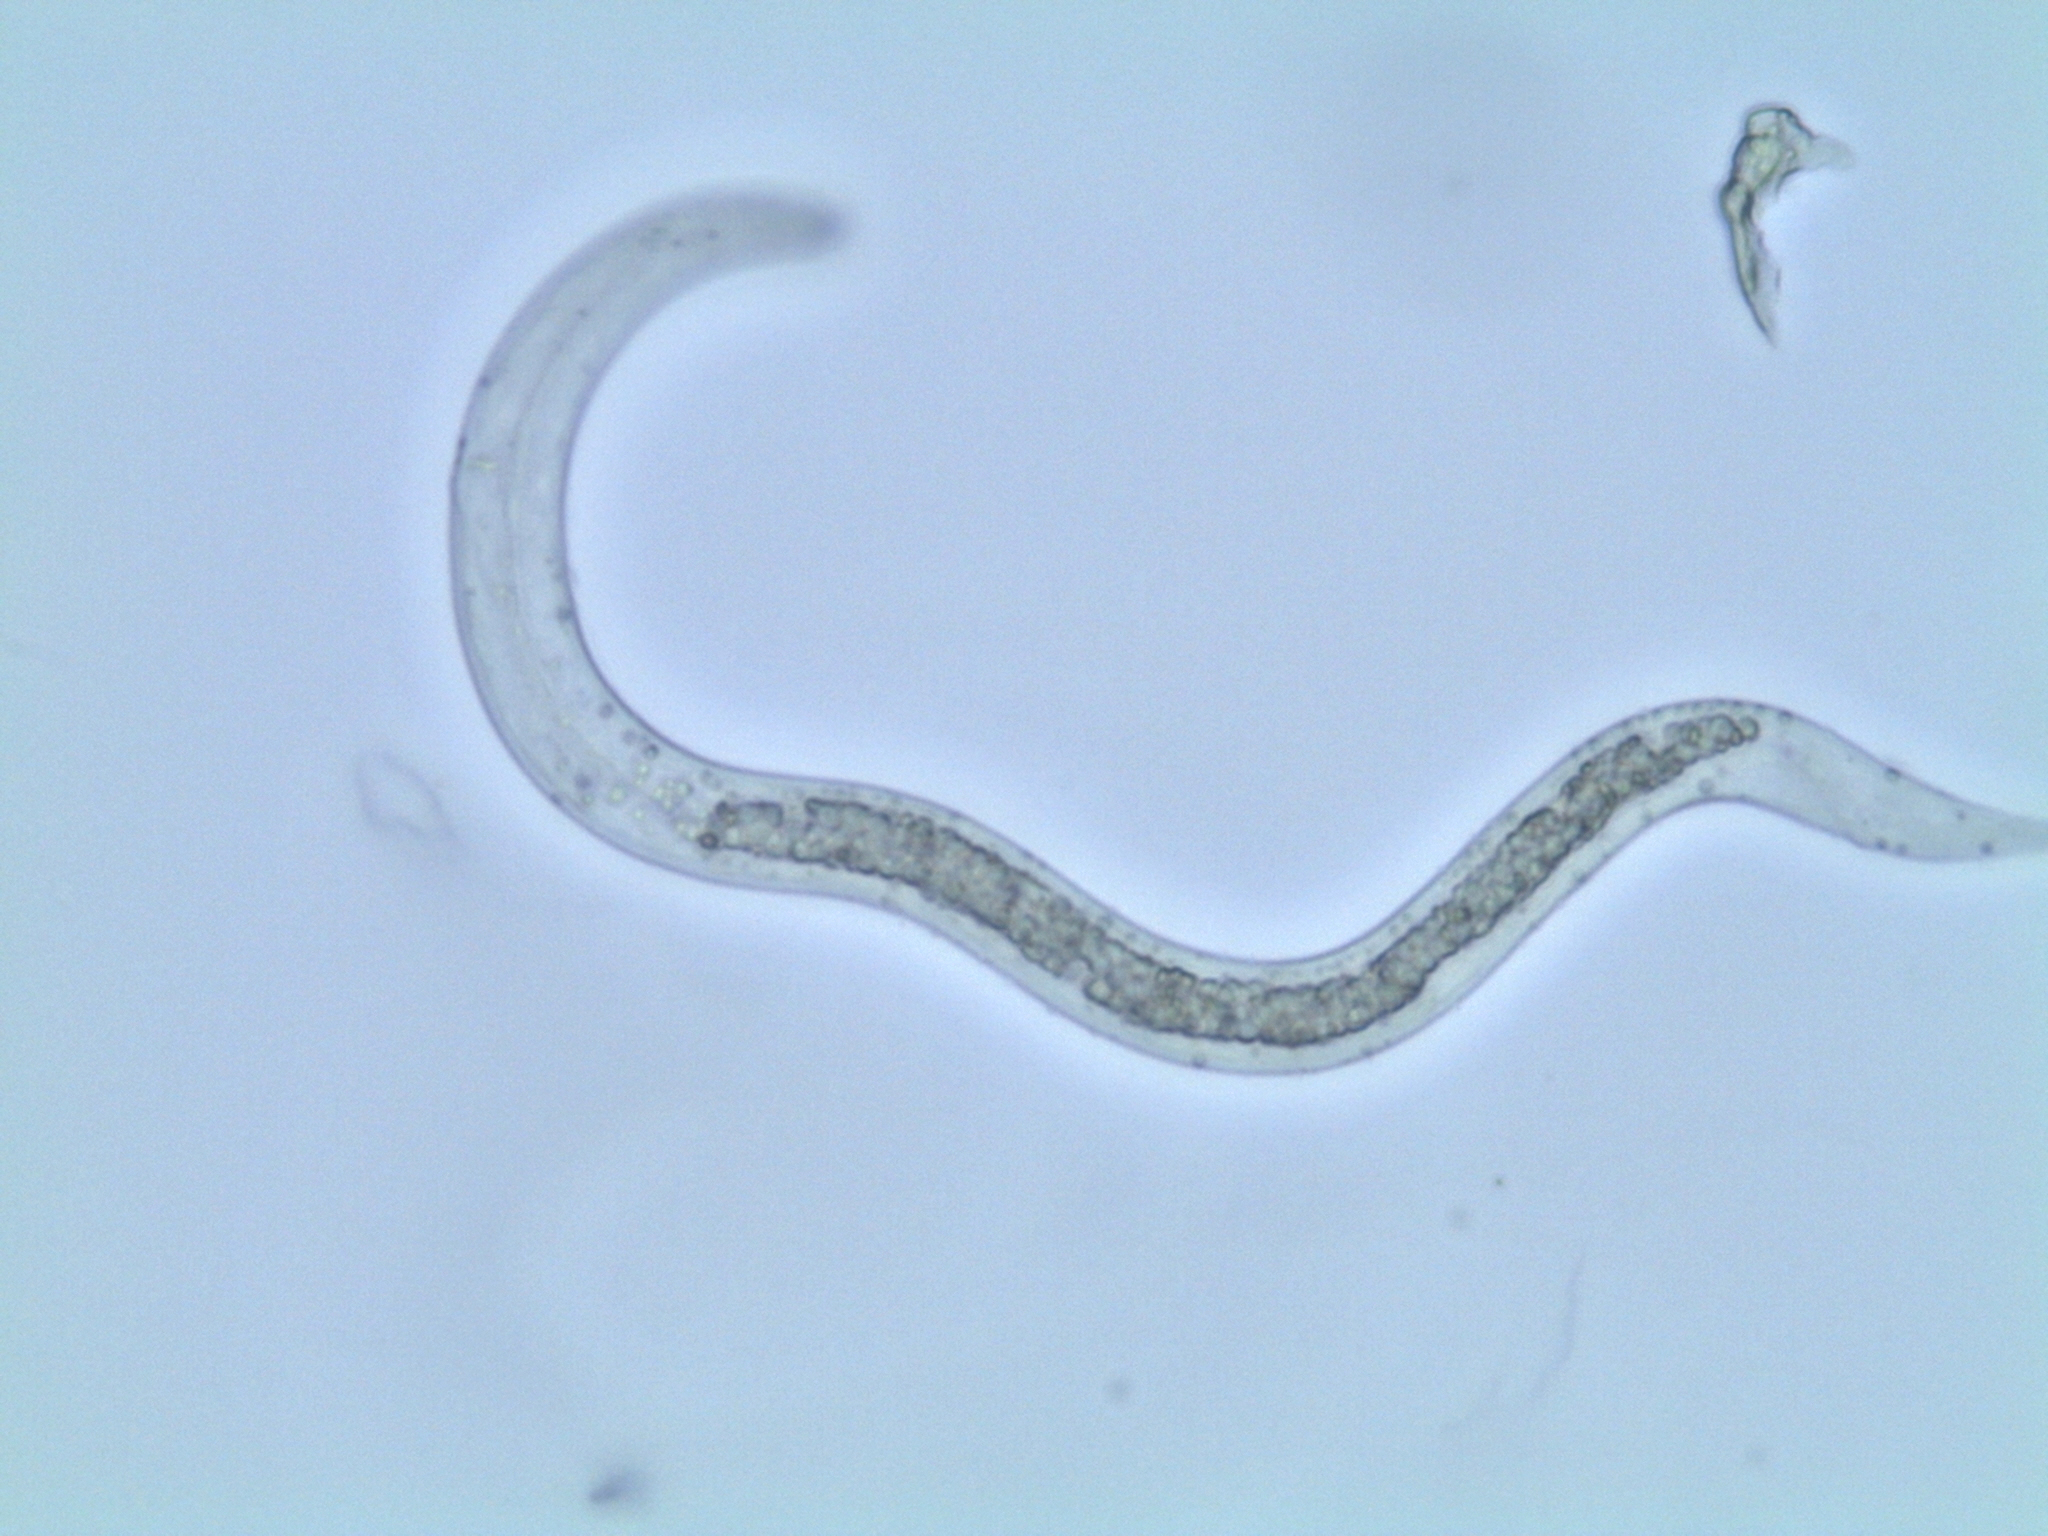 ascaris lumbricoides larvae